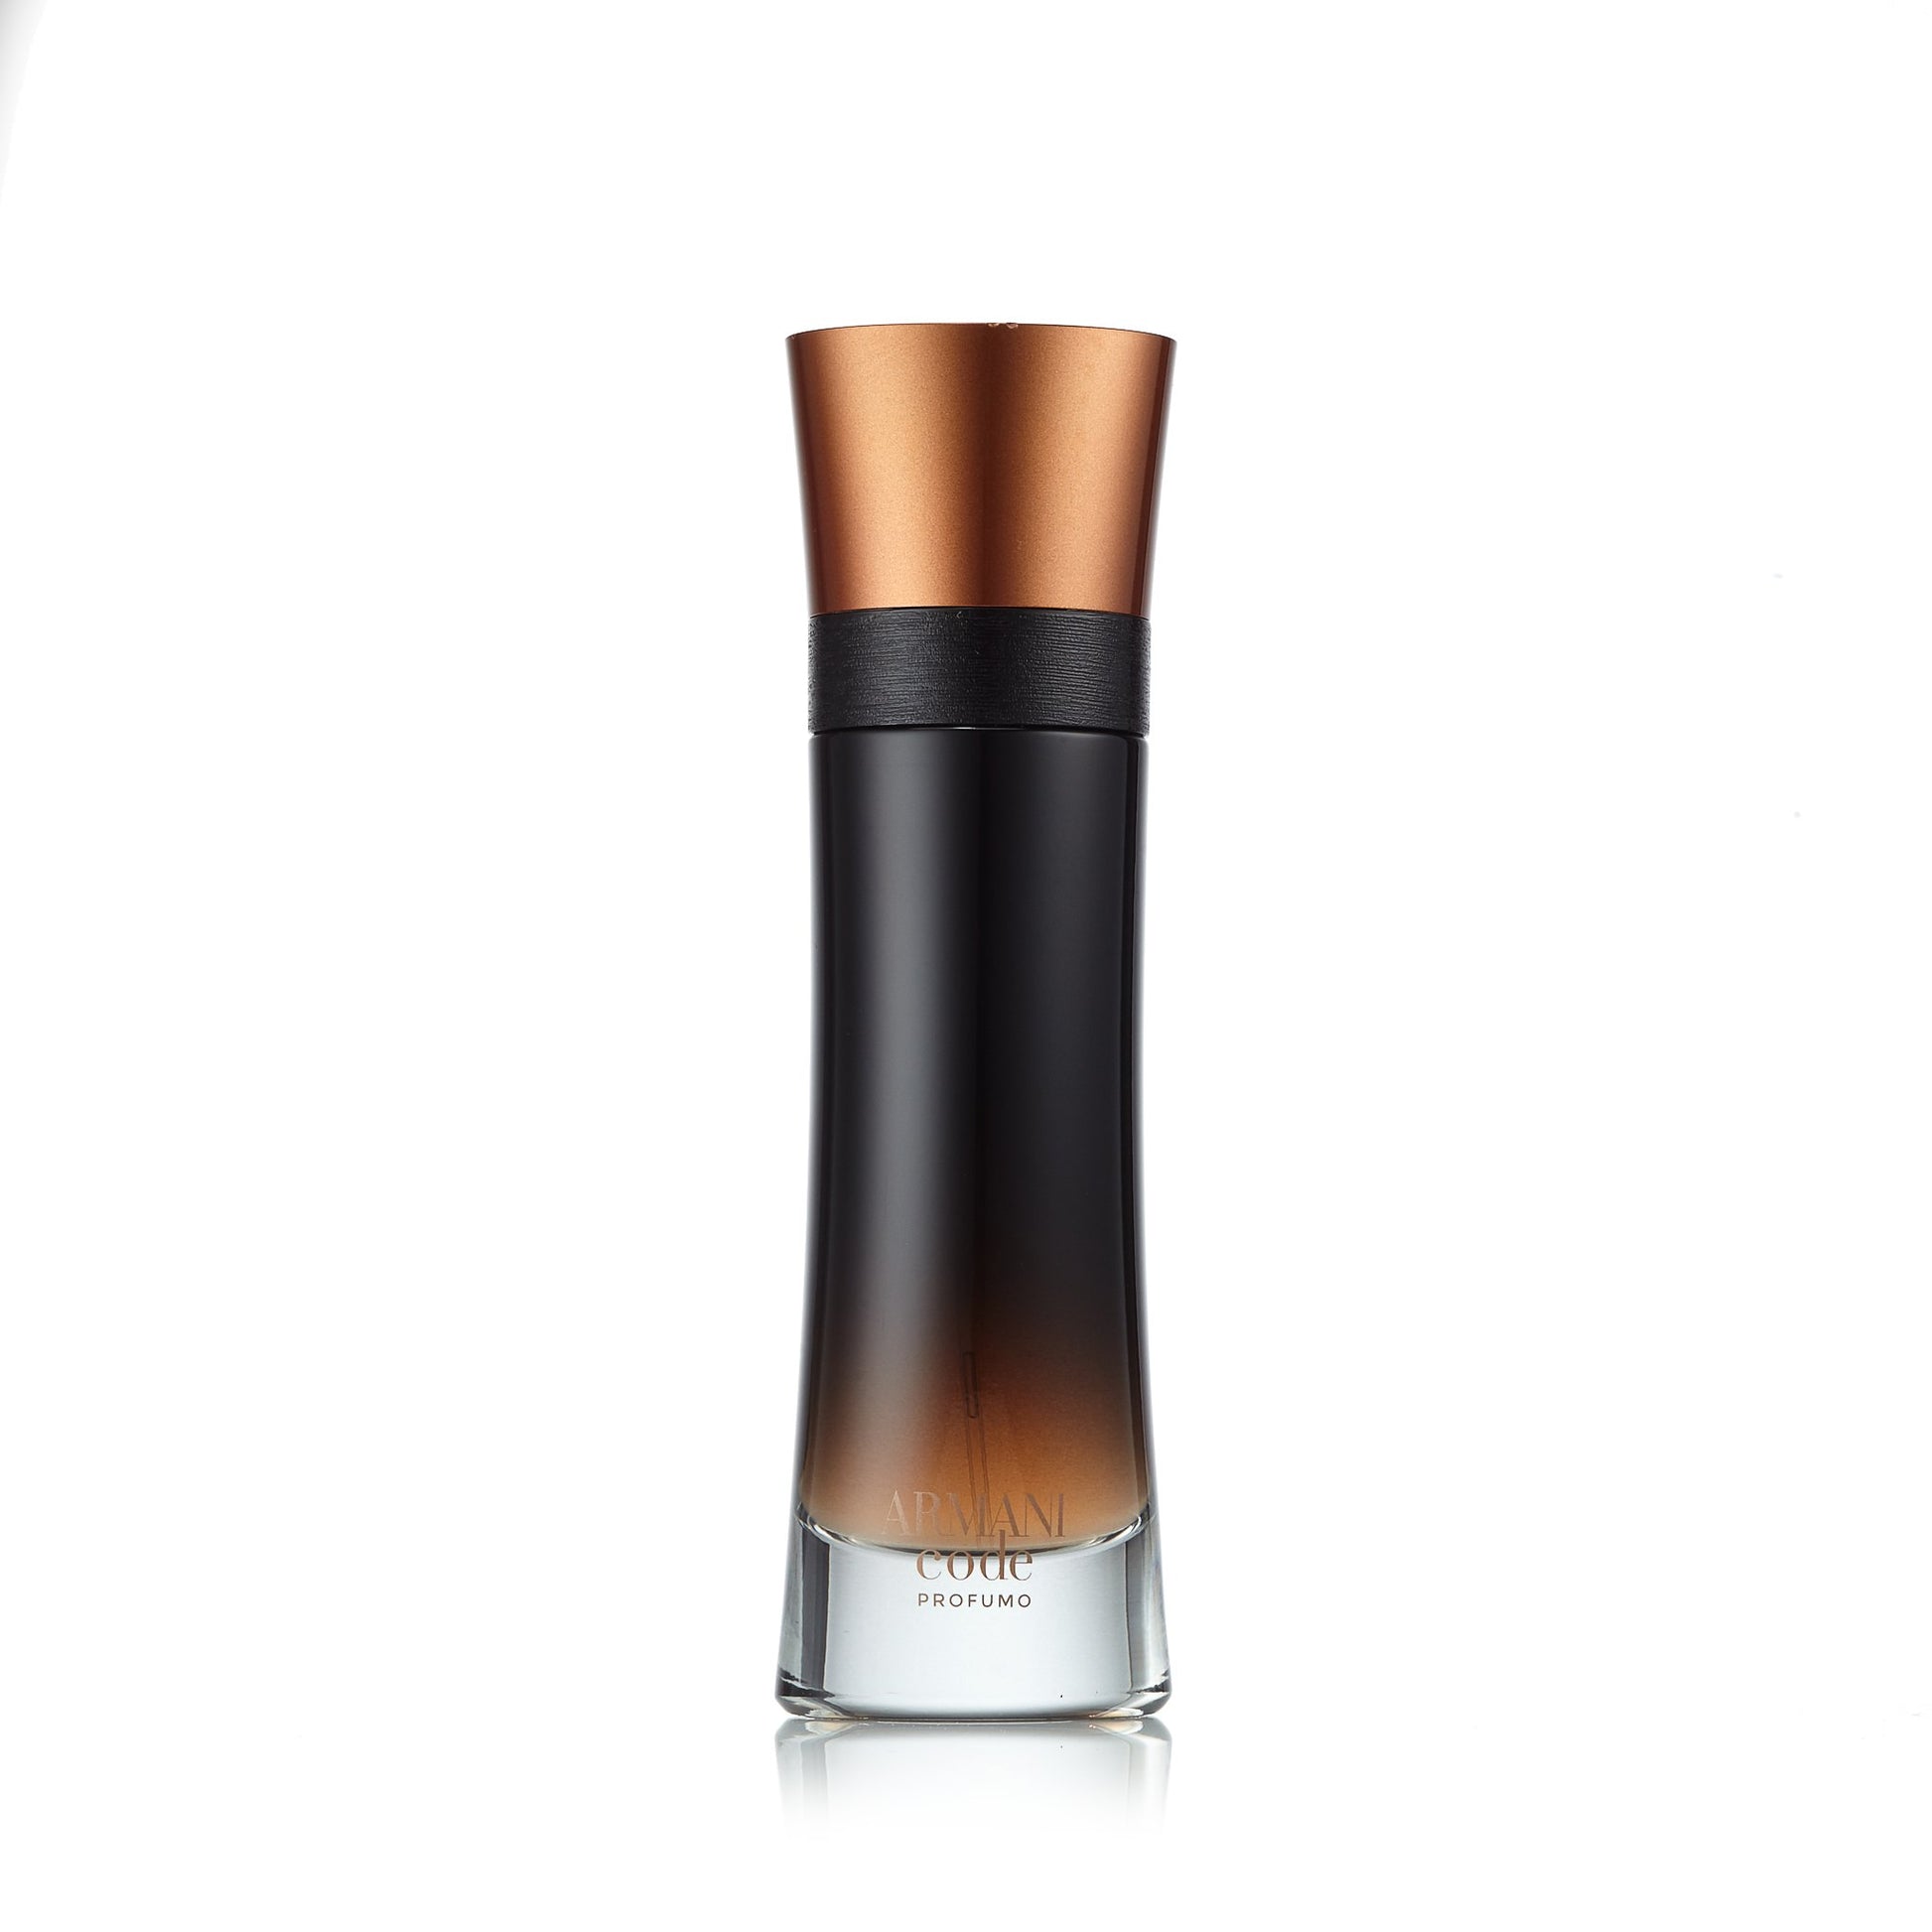 Armani Code Profumo Parfum Spray for Men by Giorgio Armani 3.7 oz. Click to open in modal